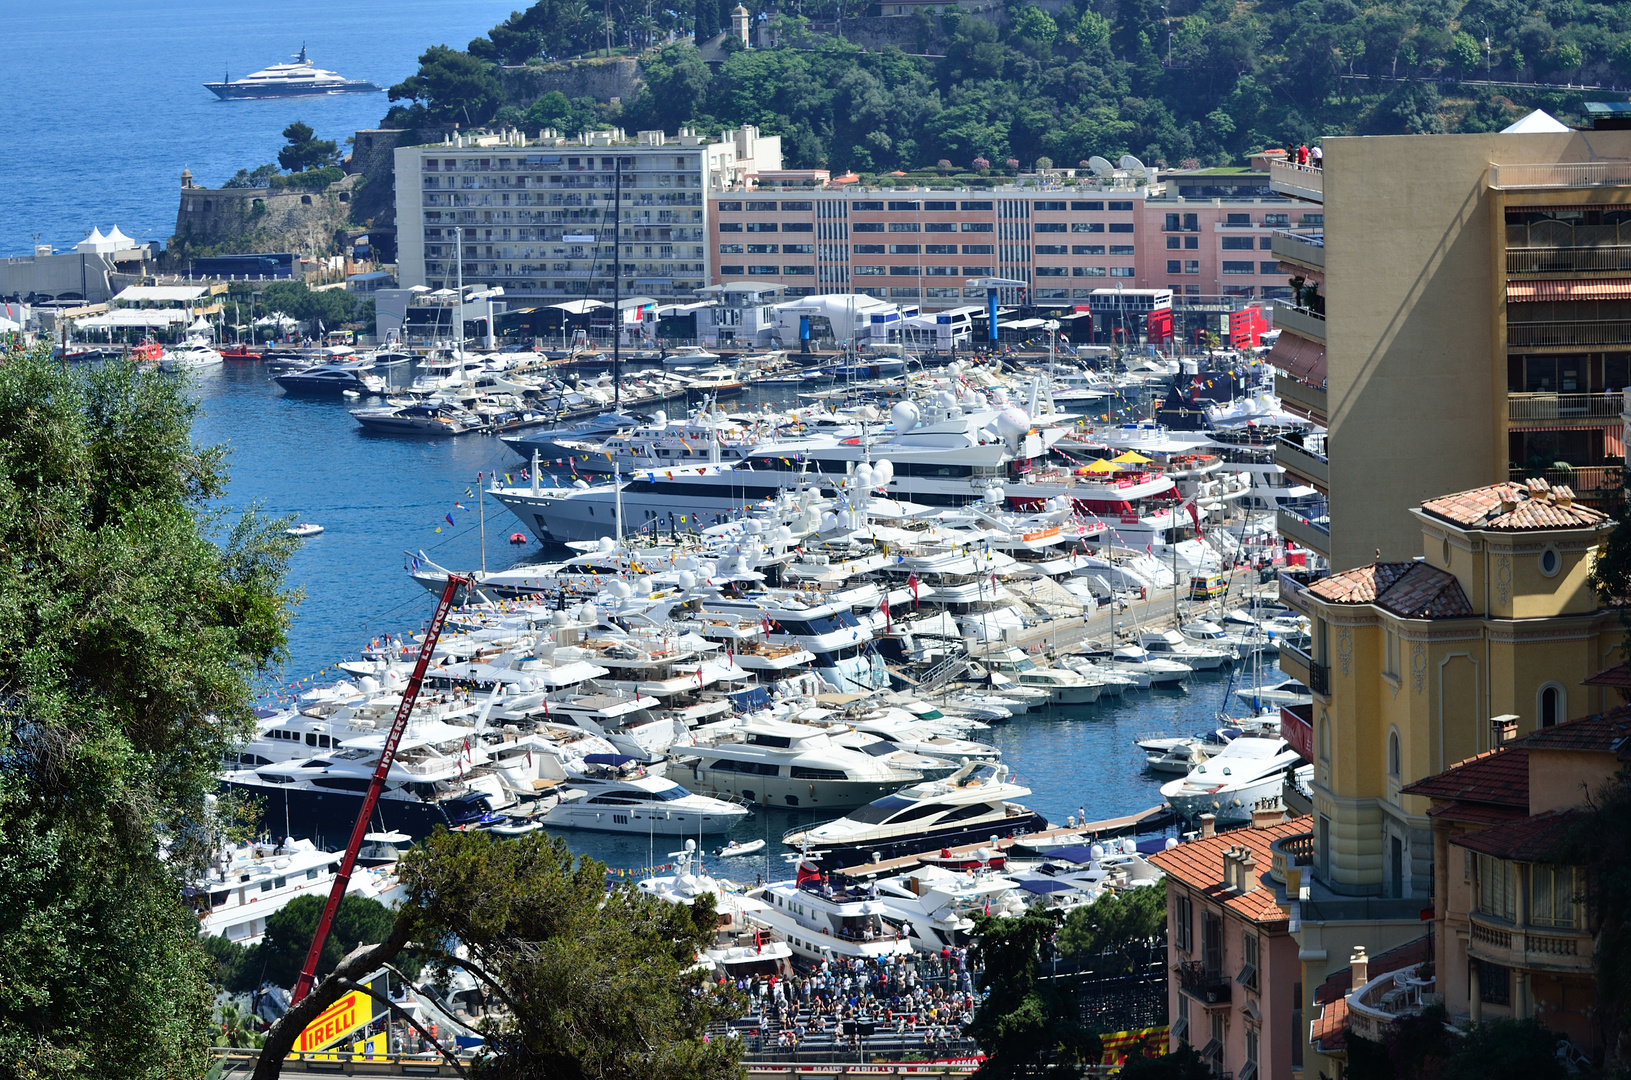 Hafen von Monaco - Formel 1